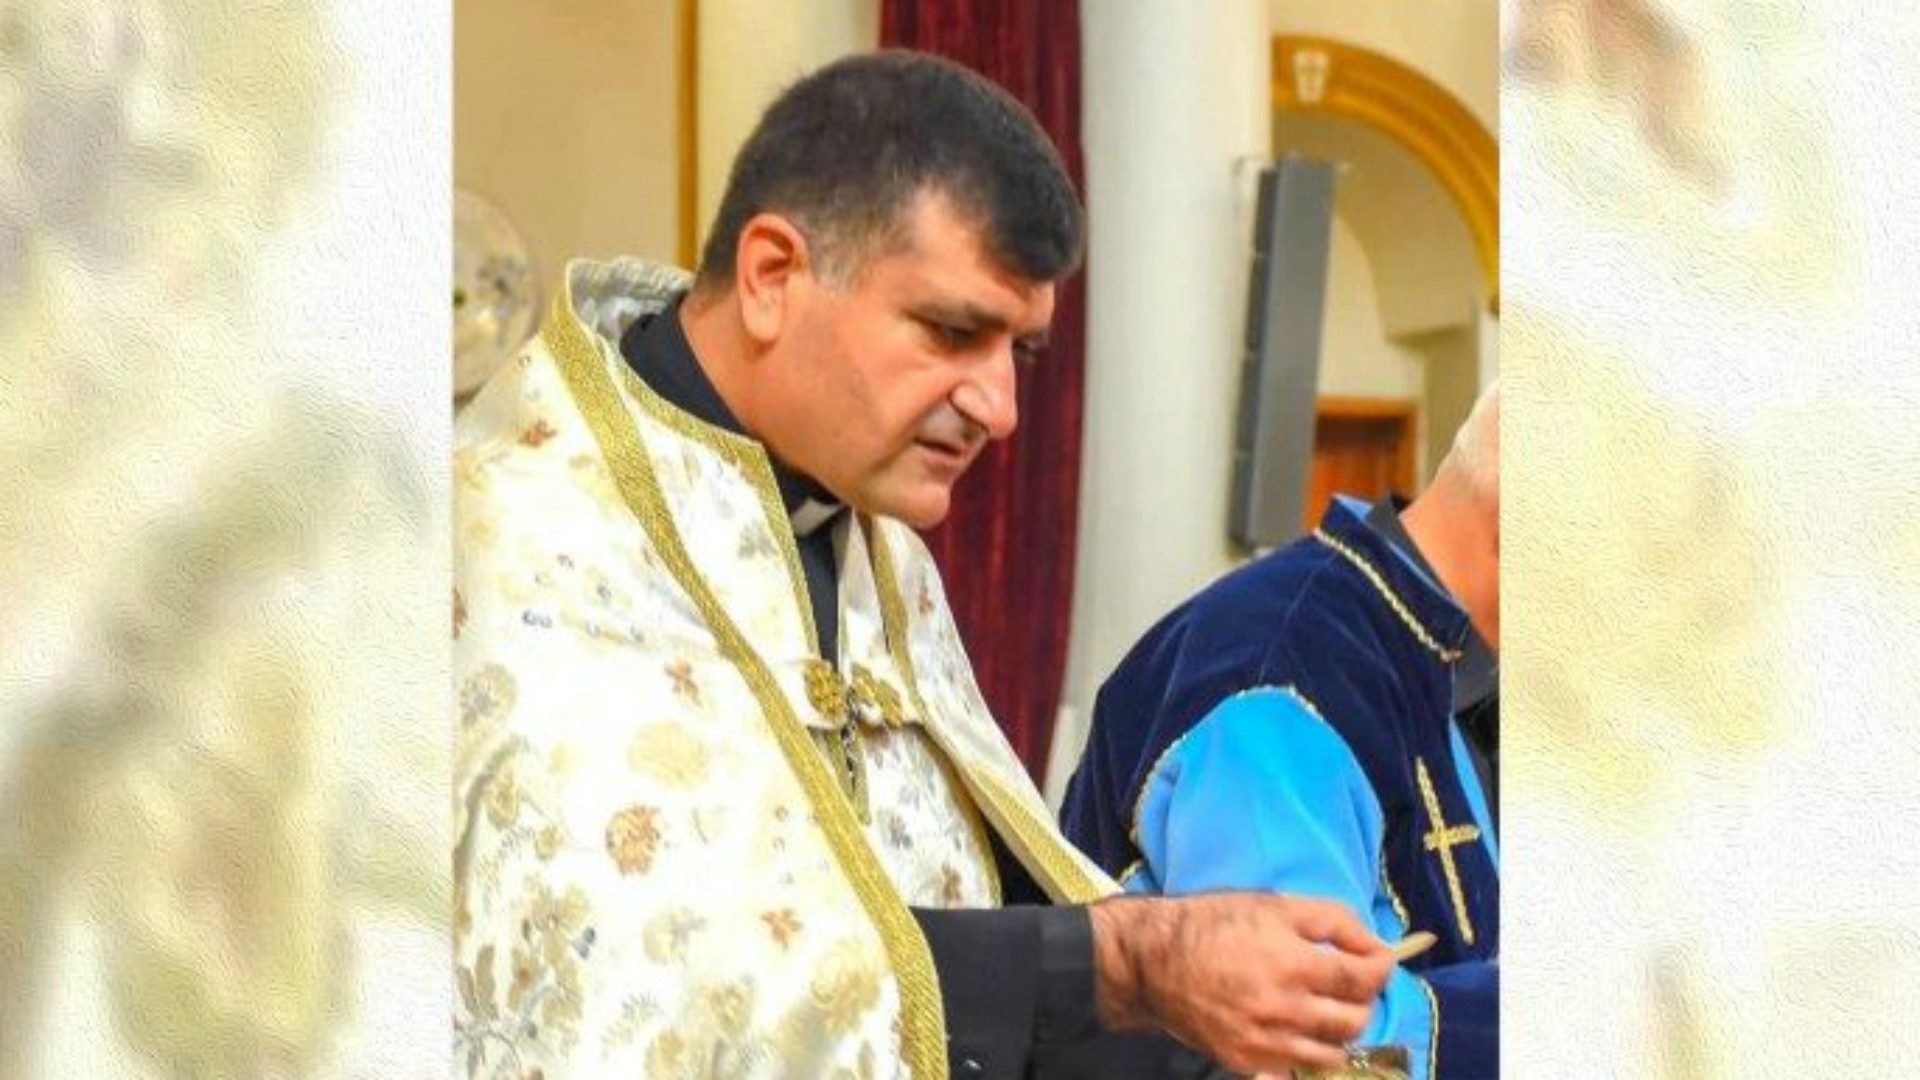 le Père Joseph Hanna Ibrahim Hovsep Bédoyan, prêtre de l’Eglise catholique arménienne de Qamichli | © Vatican Media